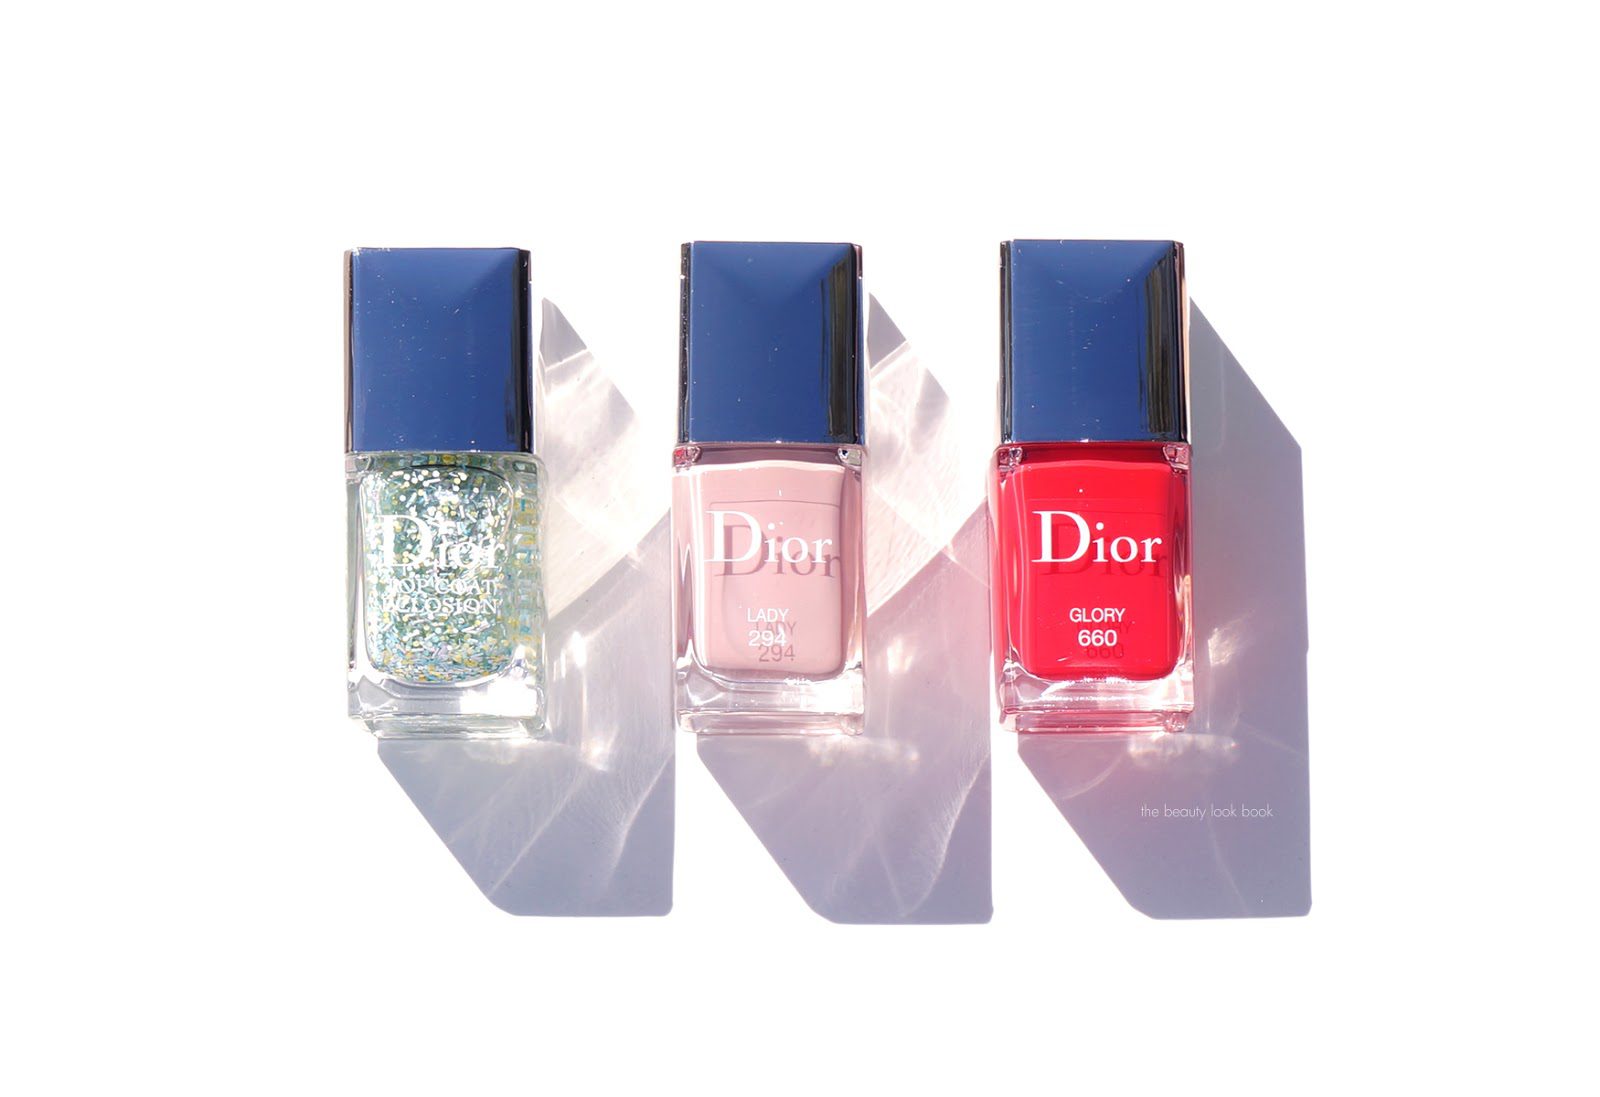 dior lady 294 nail polish